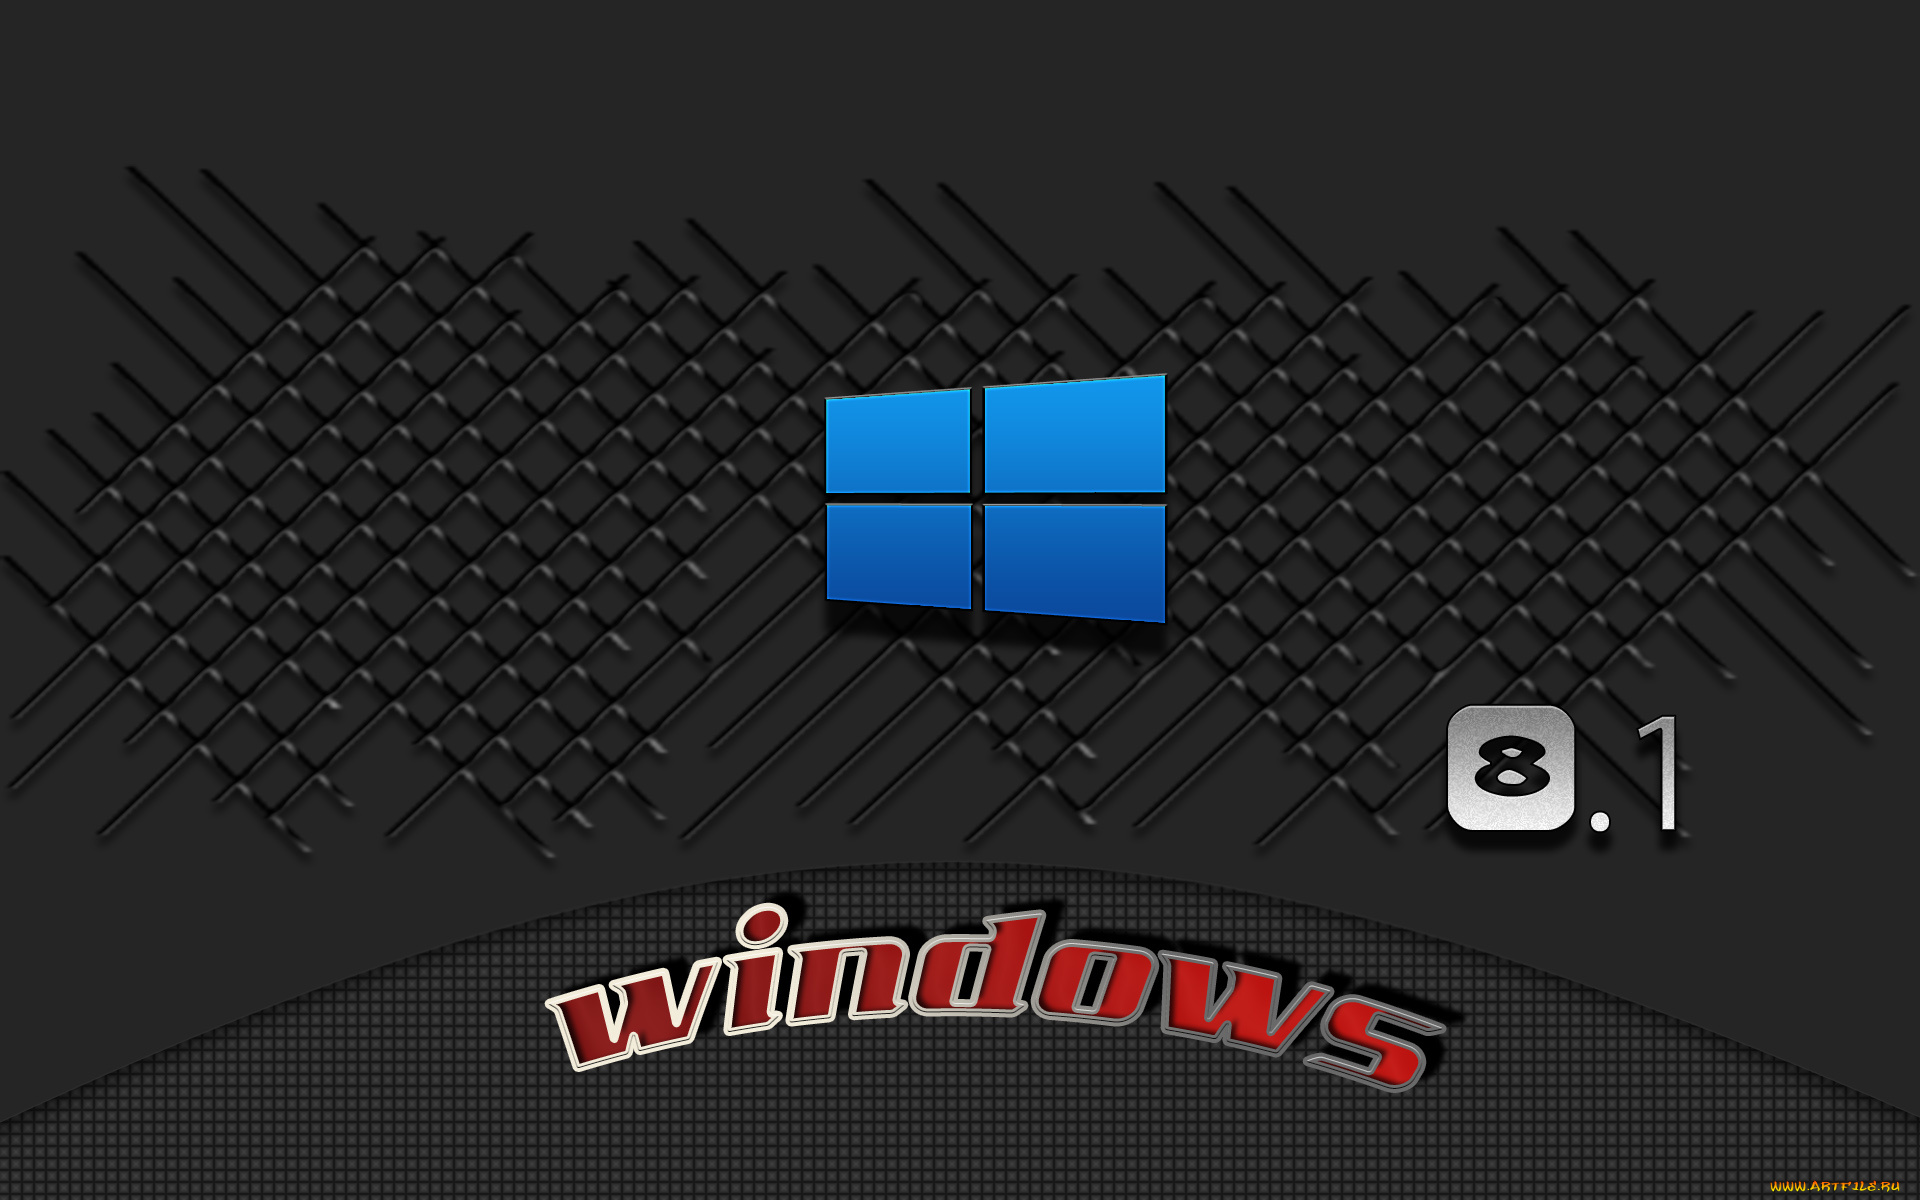 компьютеры, windows, 8, логотип, фон